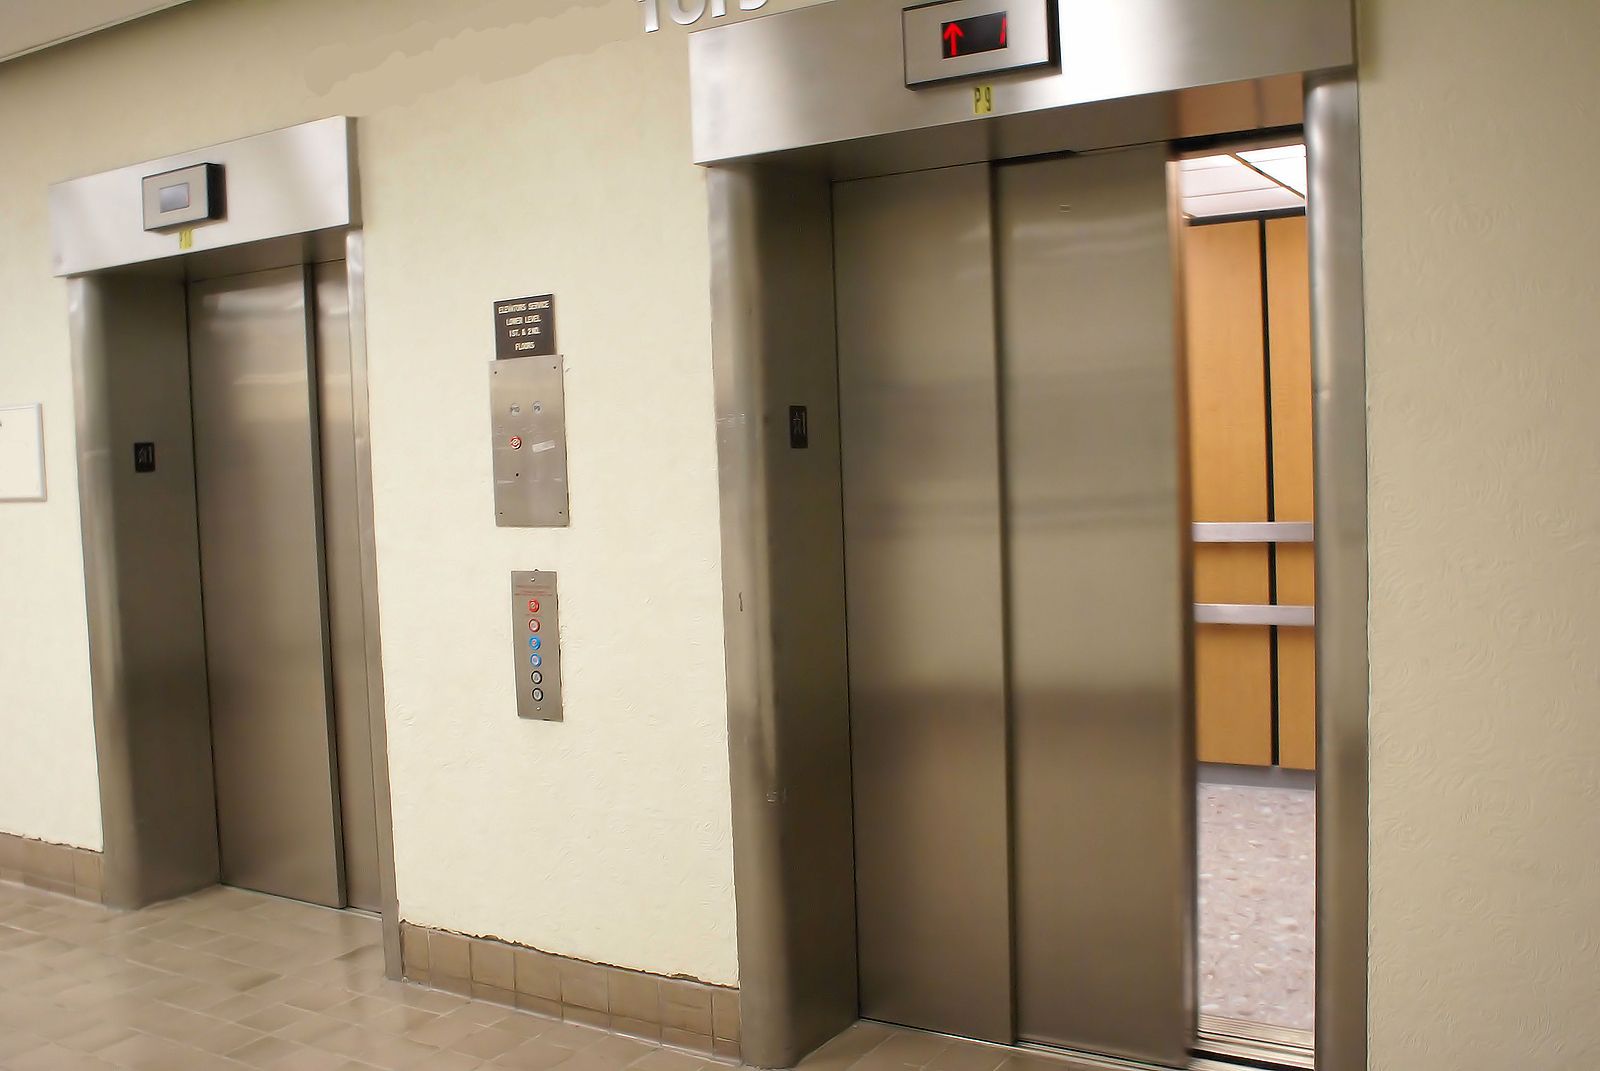 ¿Es necesario pagar por el ascensor si vivo en un bajo?